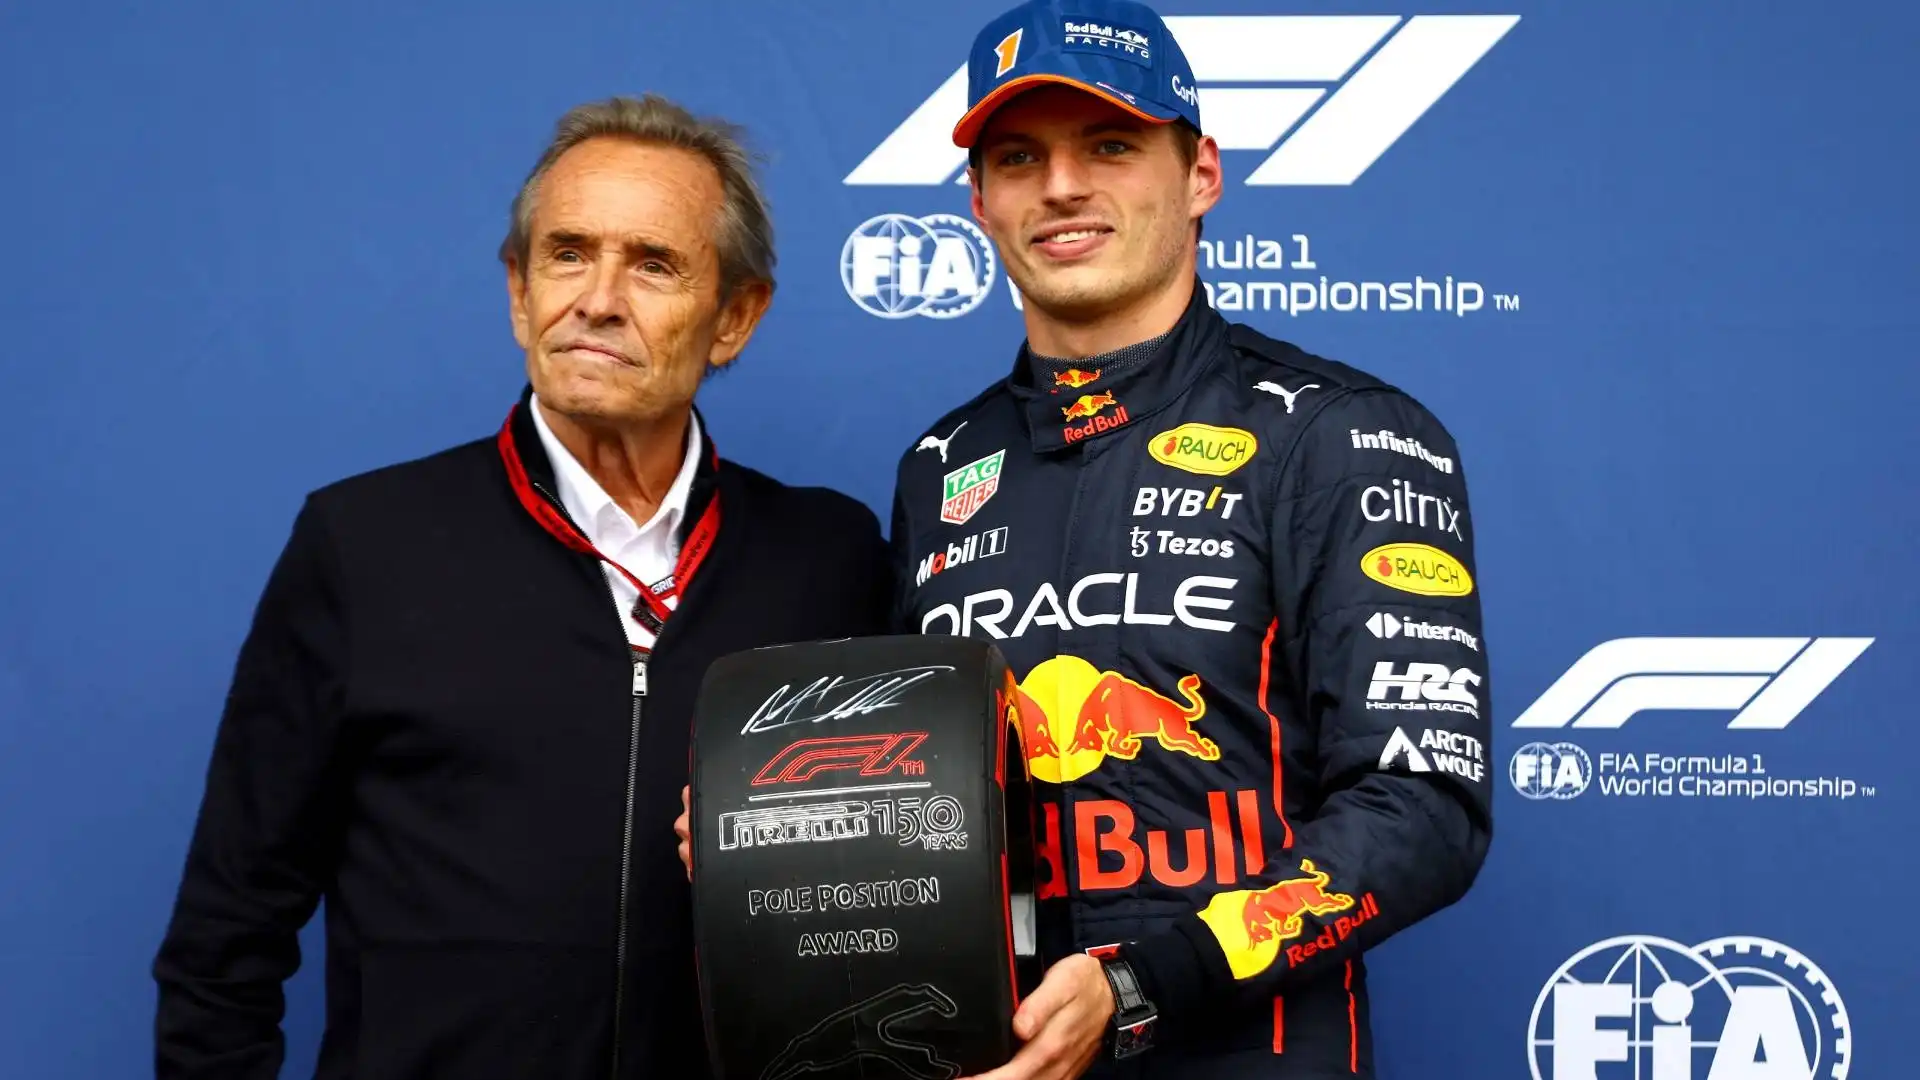 Il campione in carica della F1 è stato premiato con il riconoscimento Pirelli Pole Position